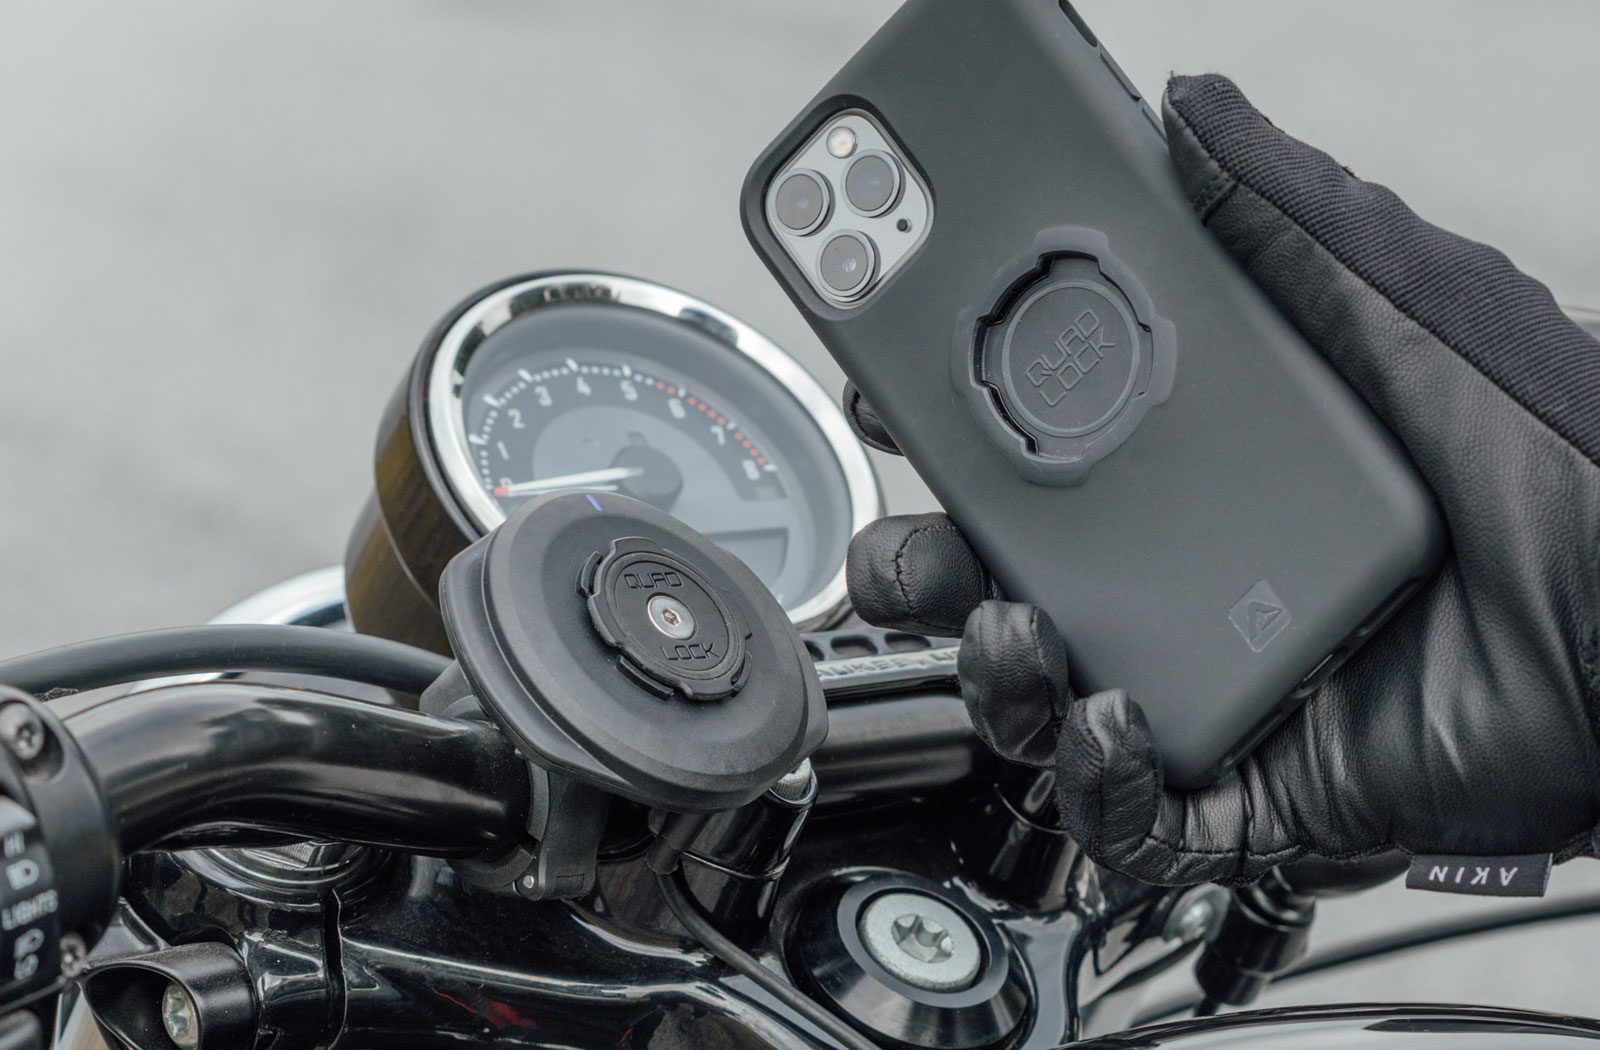 Phone mount motorcycle gift